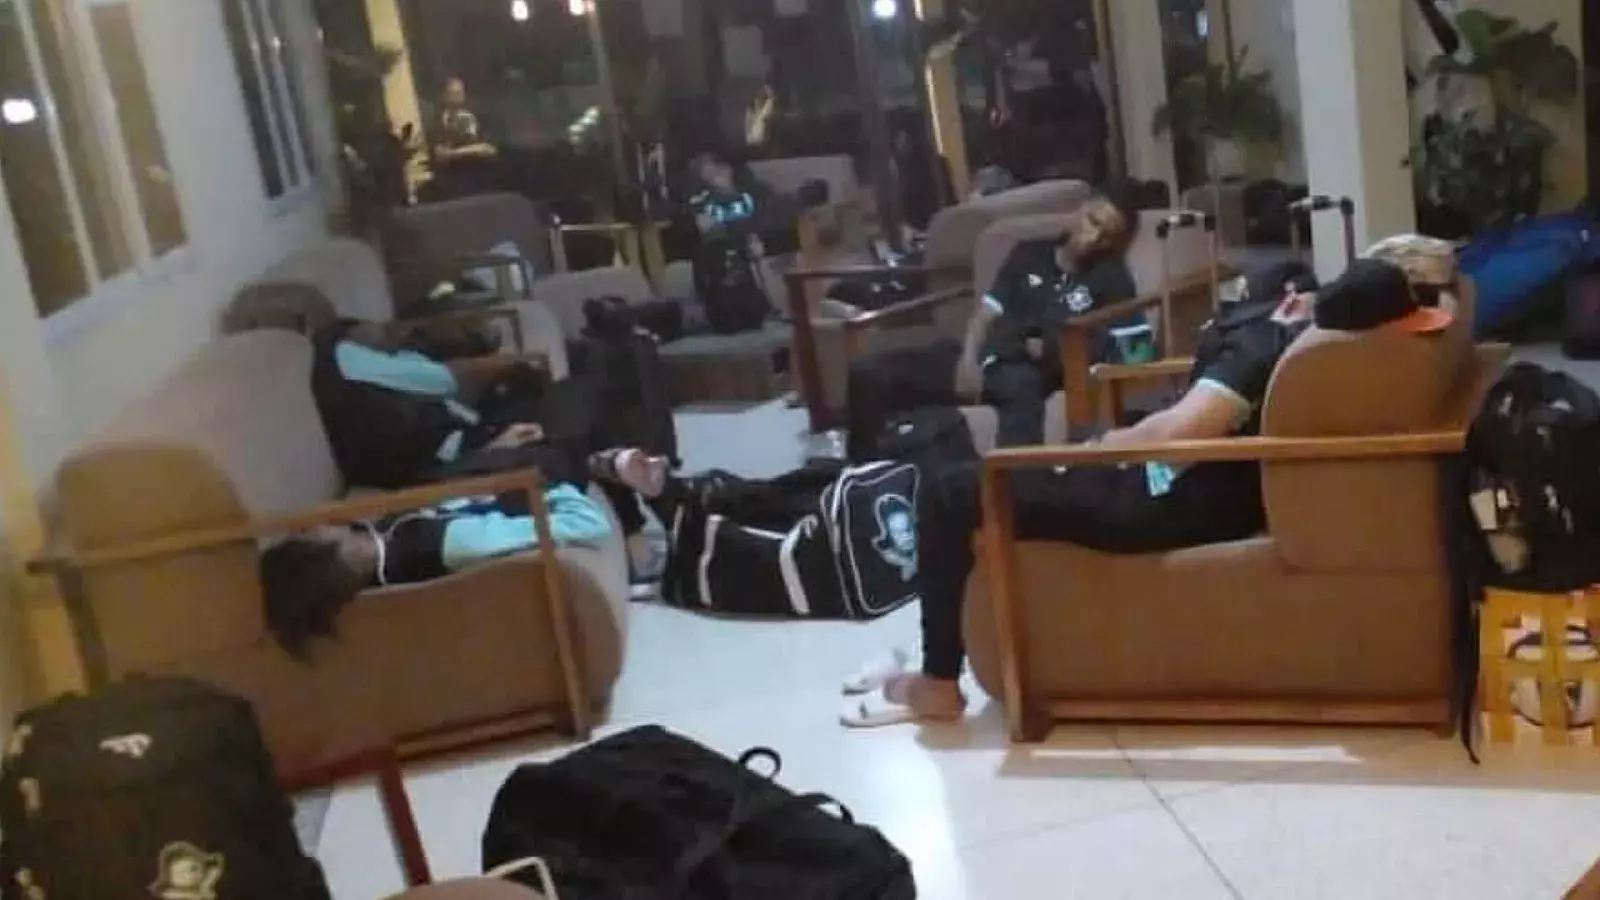 Peloteros cubanos duermen en el lobby de un hotel